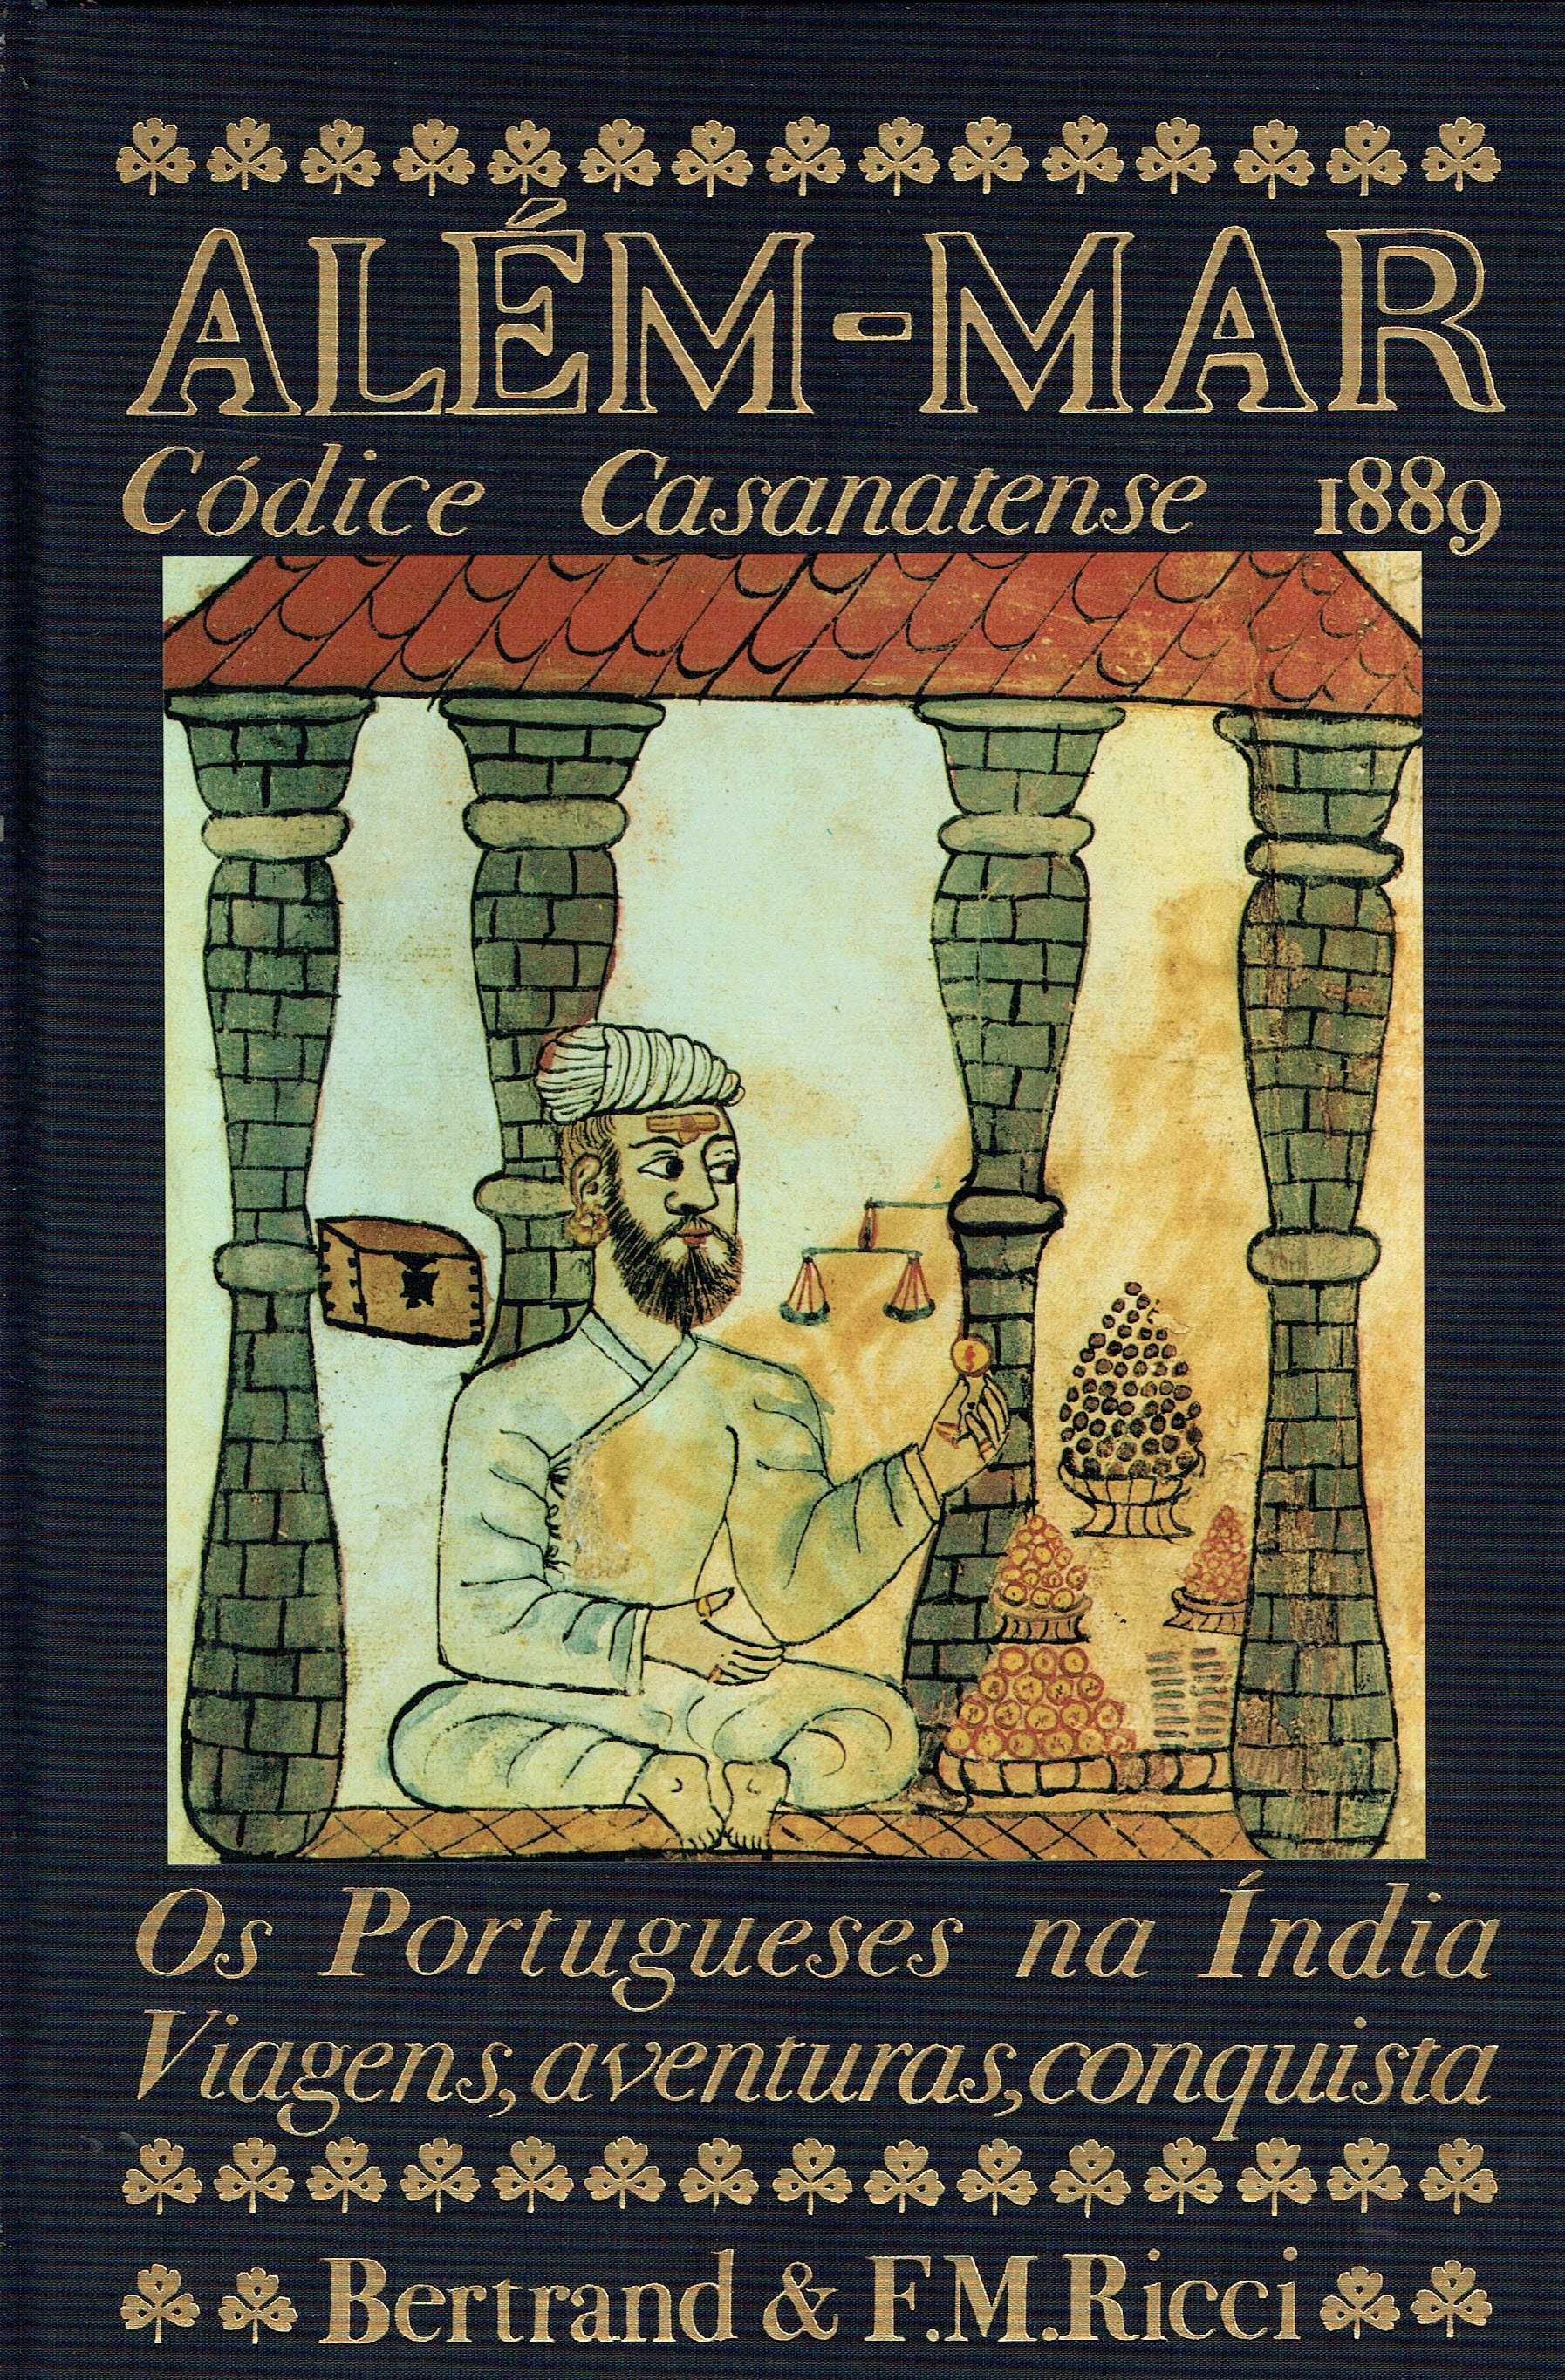 15218
Além-Mar, 
Os Portugueses na Índia, Viagens, aventuras